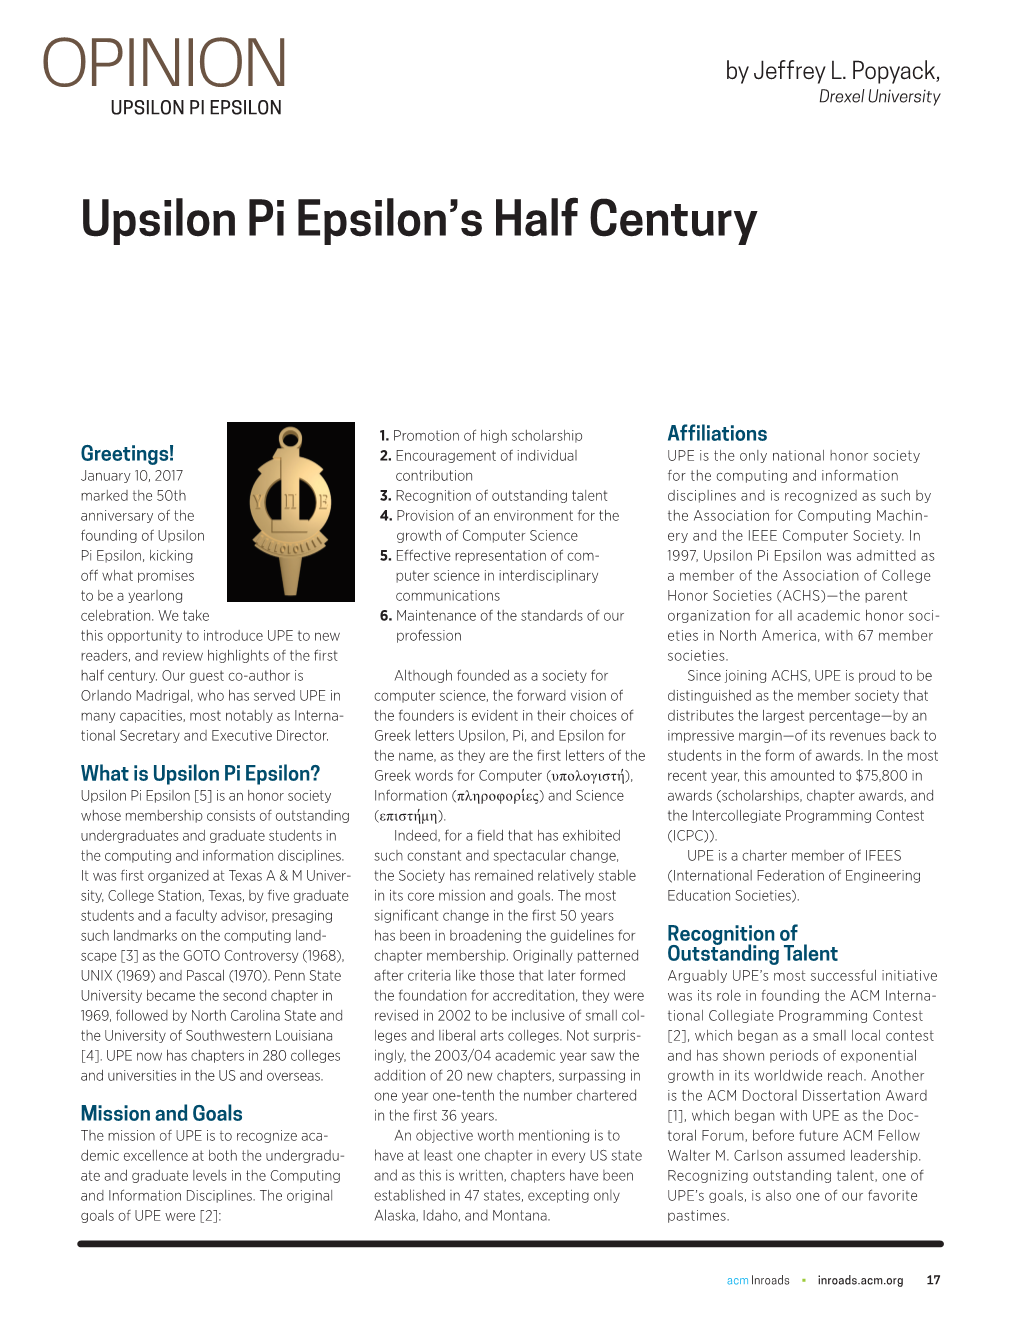 Upsilon Pi Epsilon's Half Century